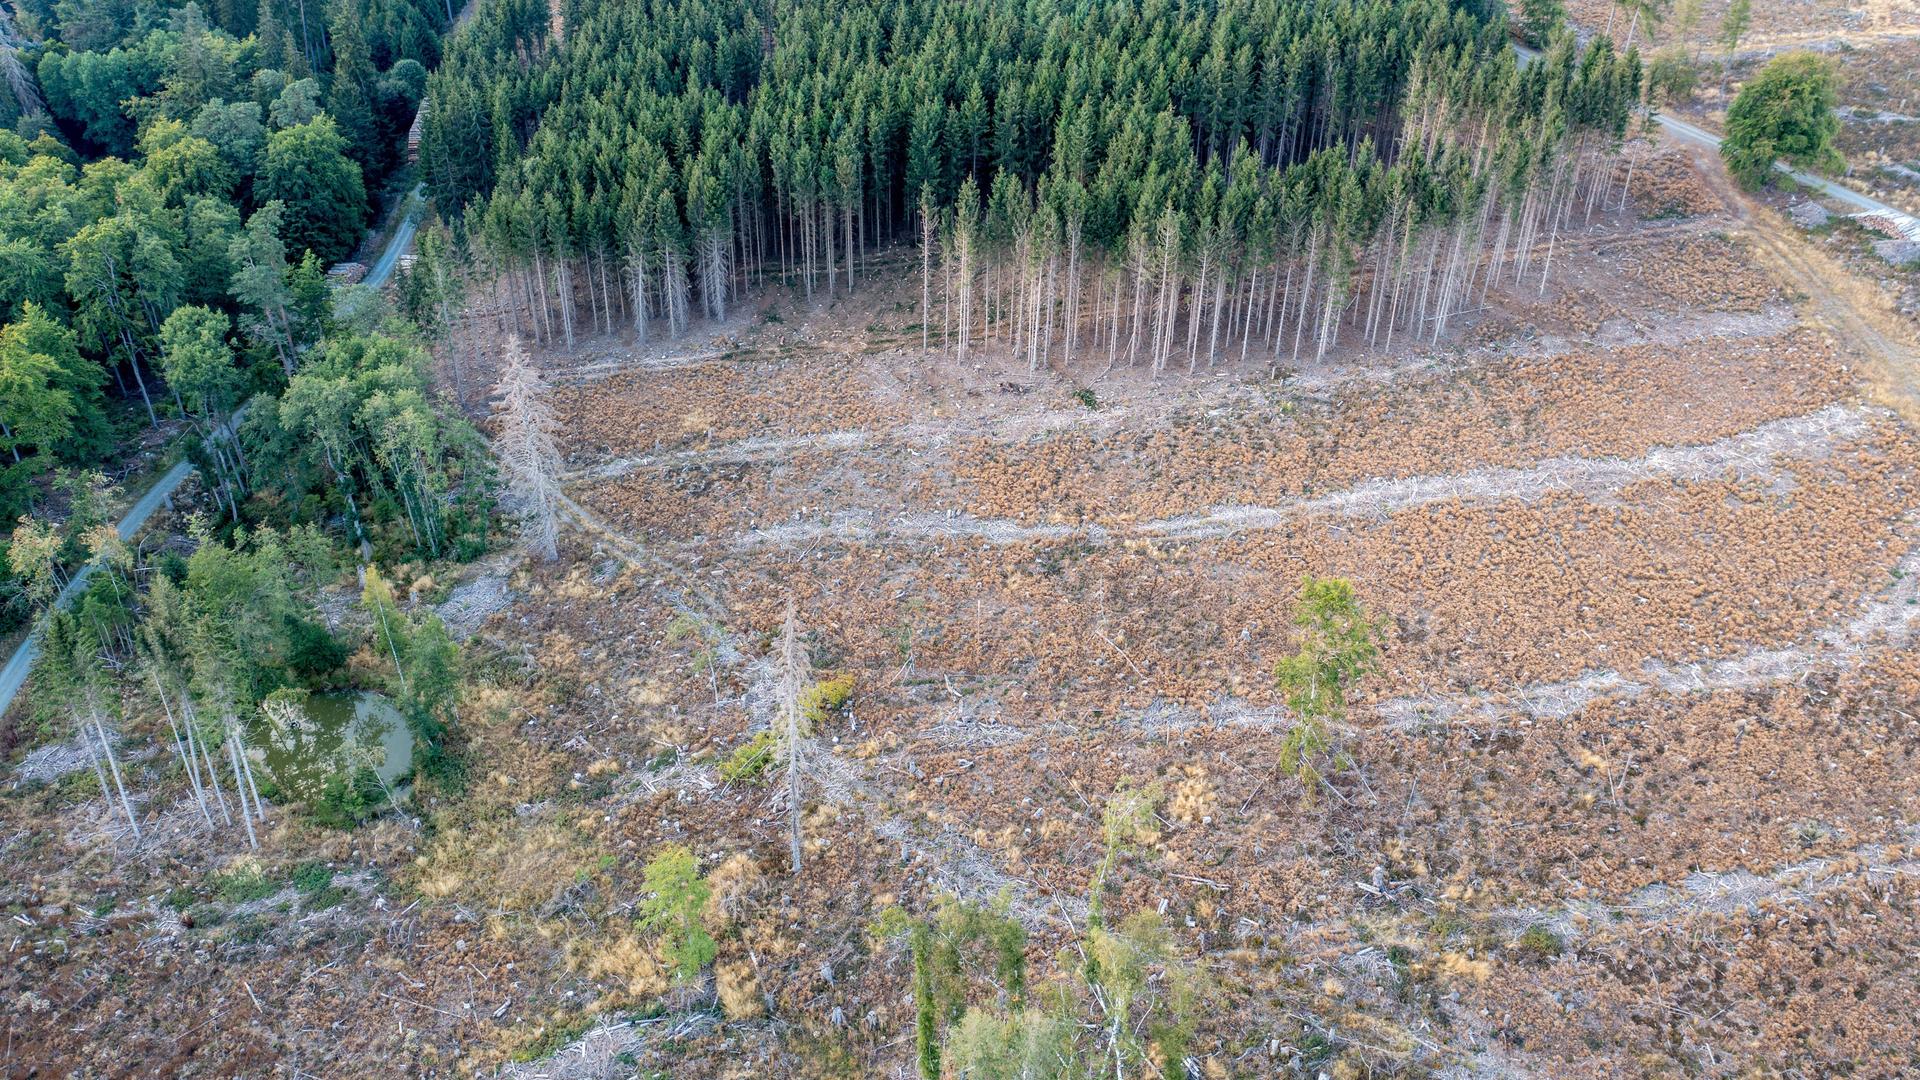 Waldsterben im Taunus: Der Befall des Borkenkäfers und die anhaltende Trockenheit führt zu Kahlschlag in deutschen Wäldern